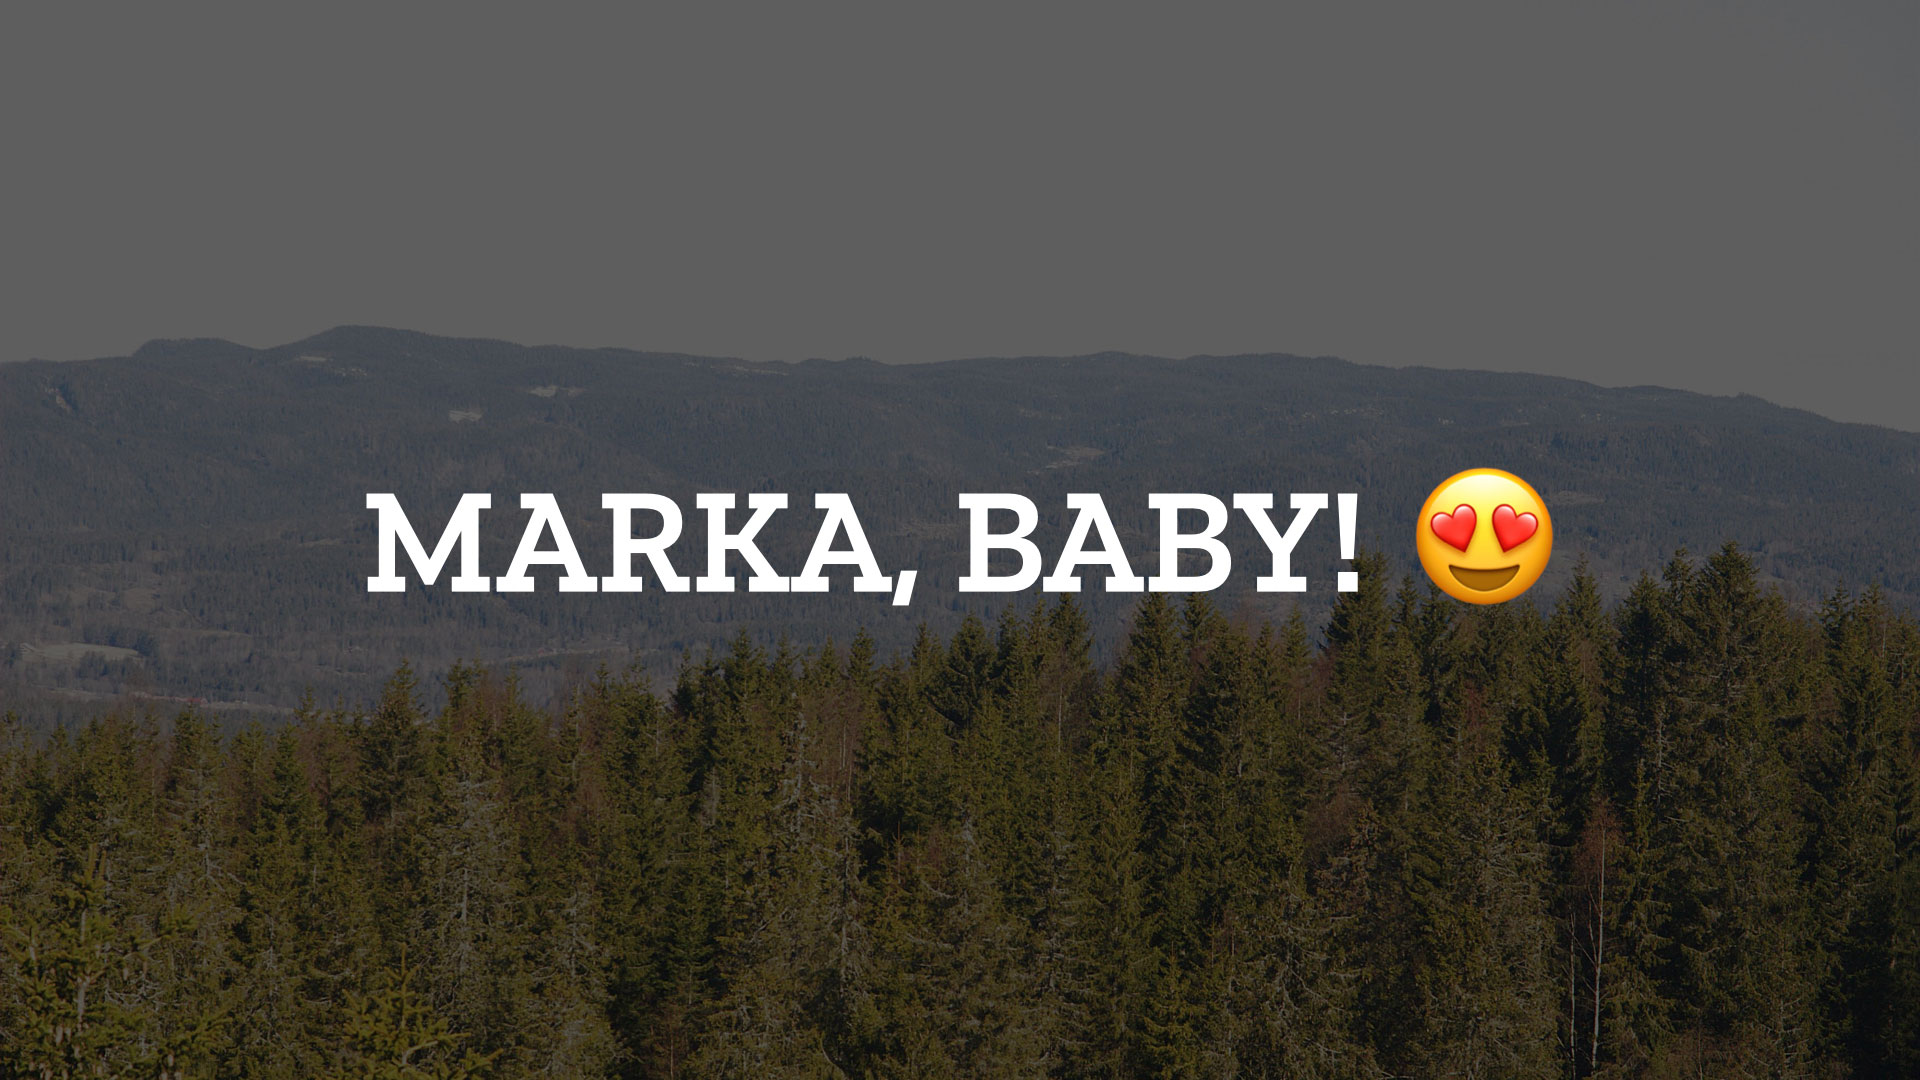 Marka, baby!